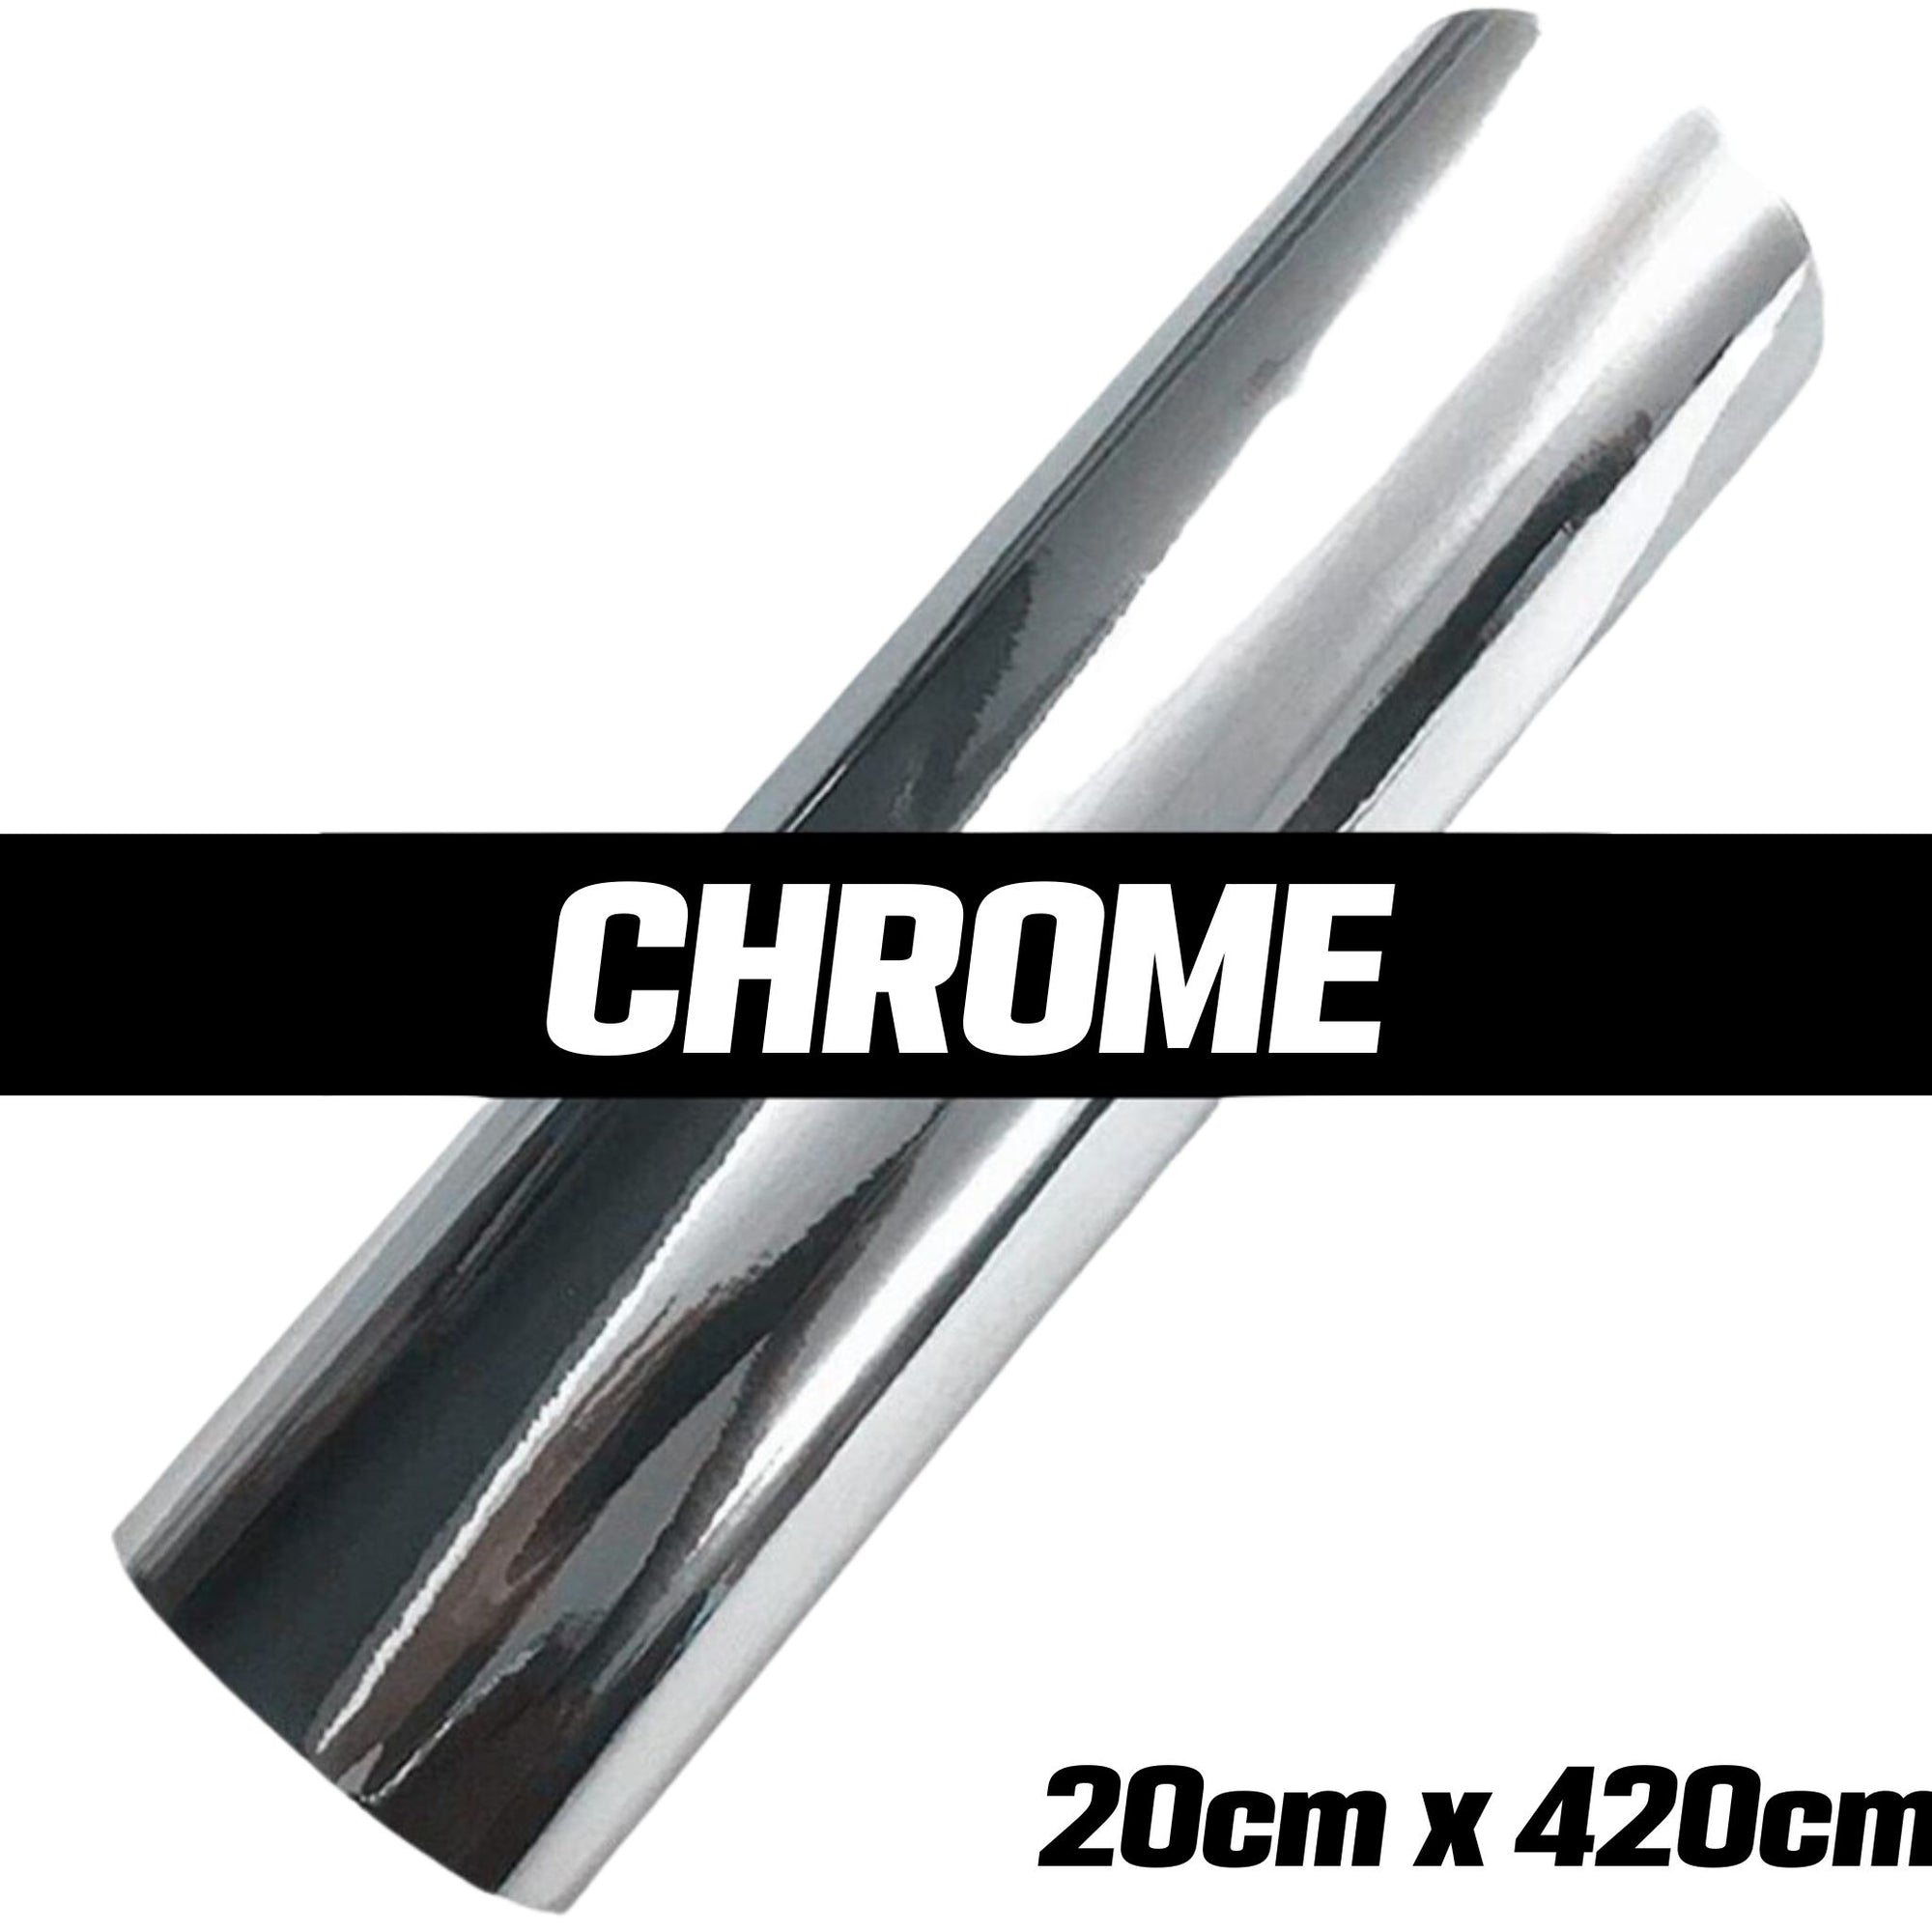 Automotive Car Chrome Vinyl Film Wrap | Sticker Decal | 20cm x 420cm - South East Clearance Centre